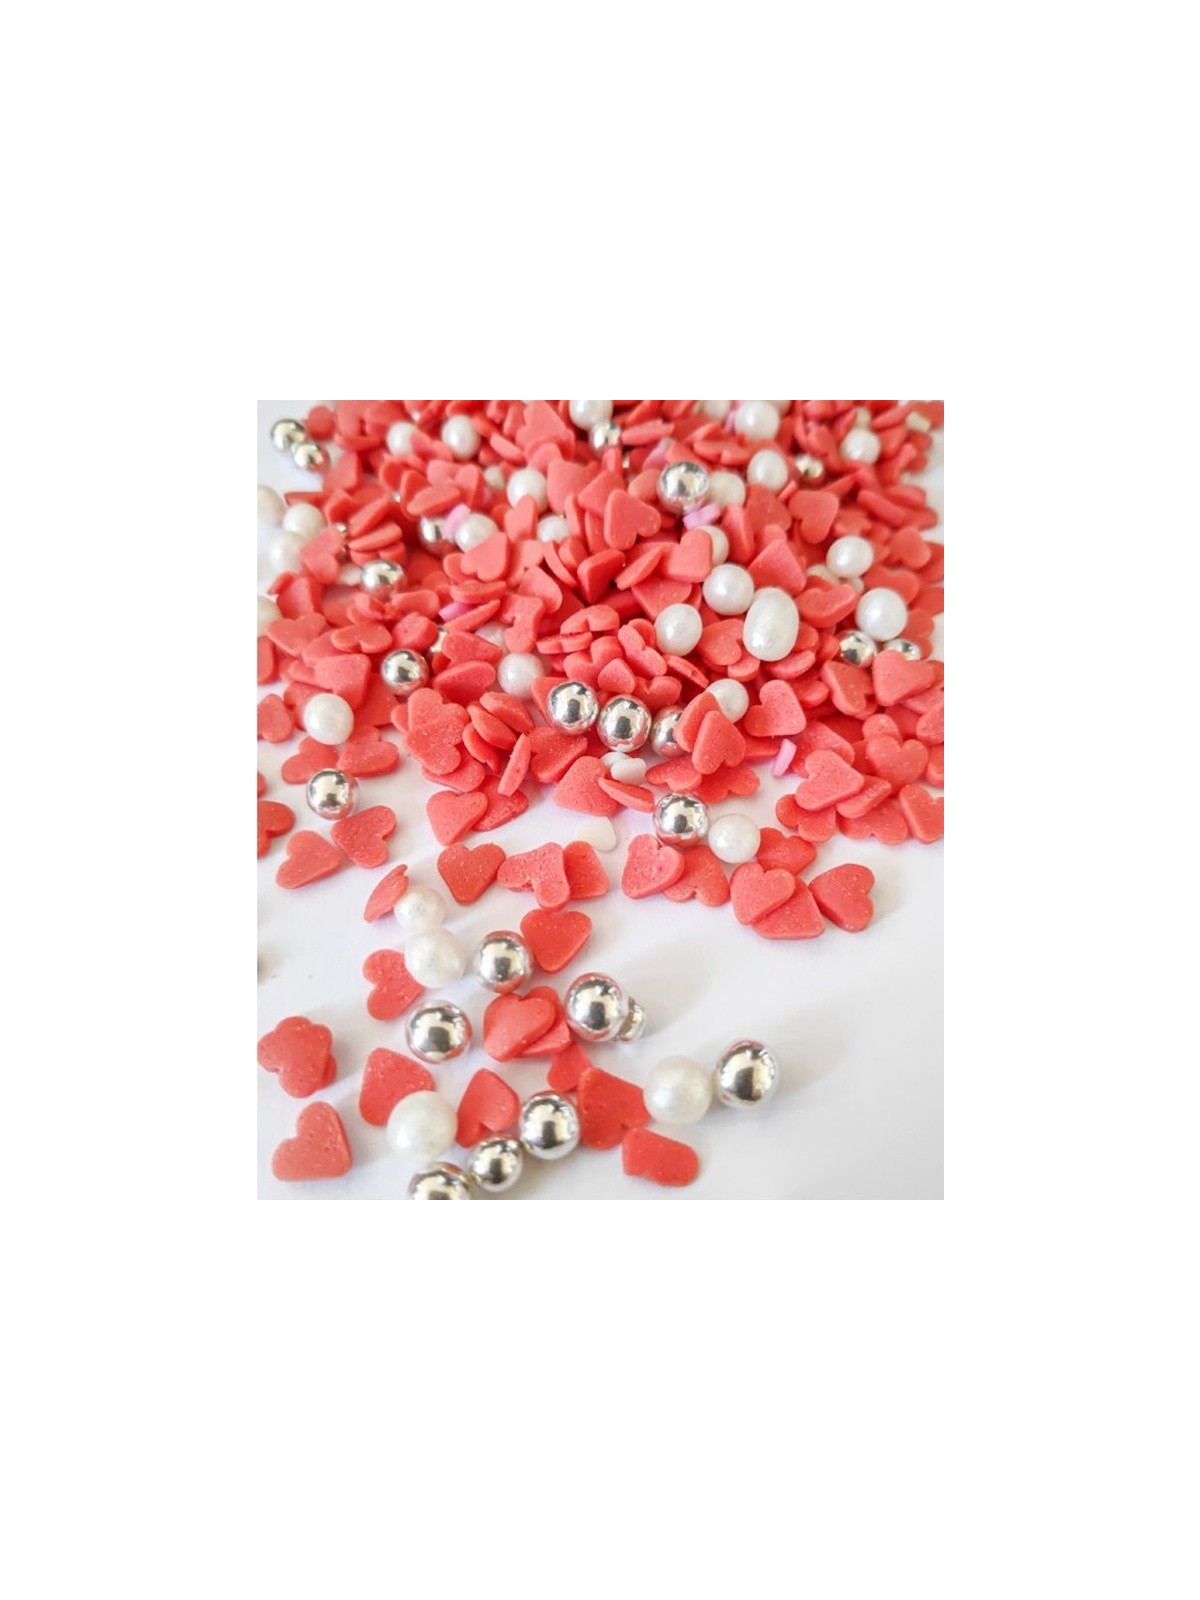 Cukrové perličky / srdiečka - biele / červená - 100g